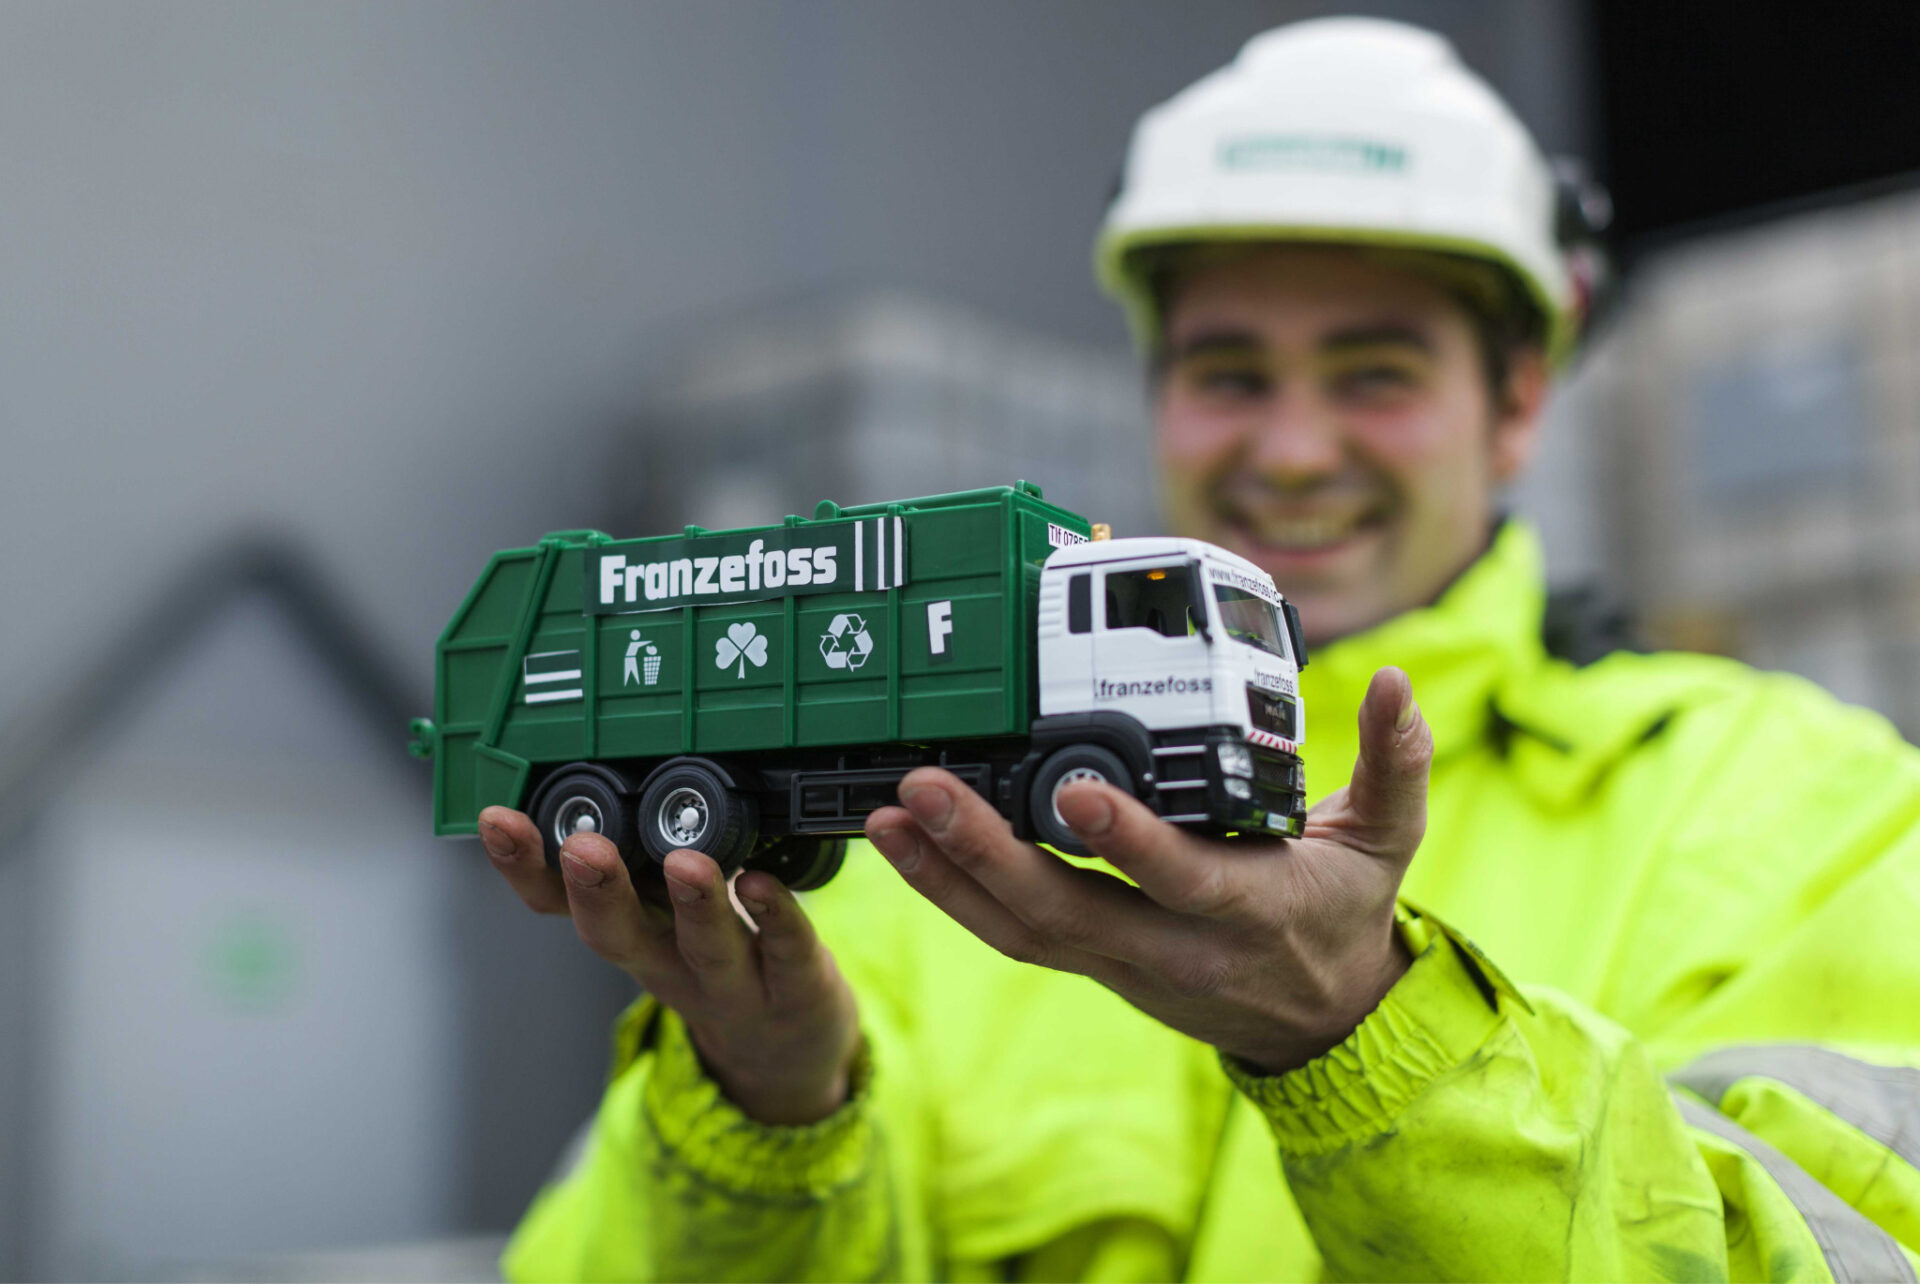 Mann holder en lekelastebil med Franzefoss logo